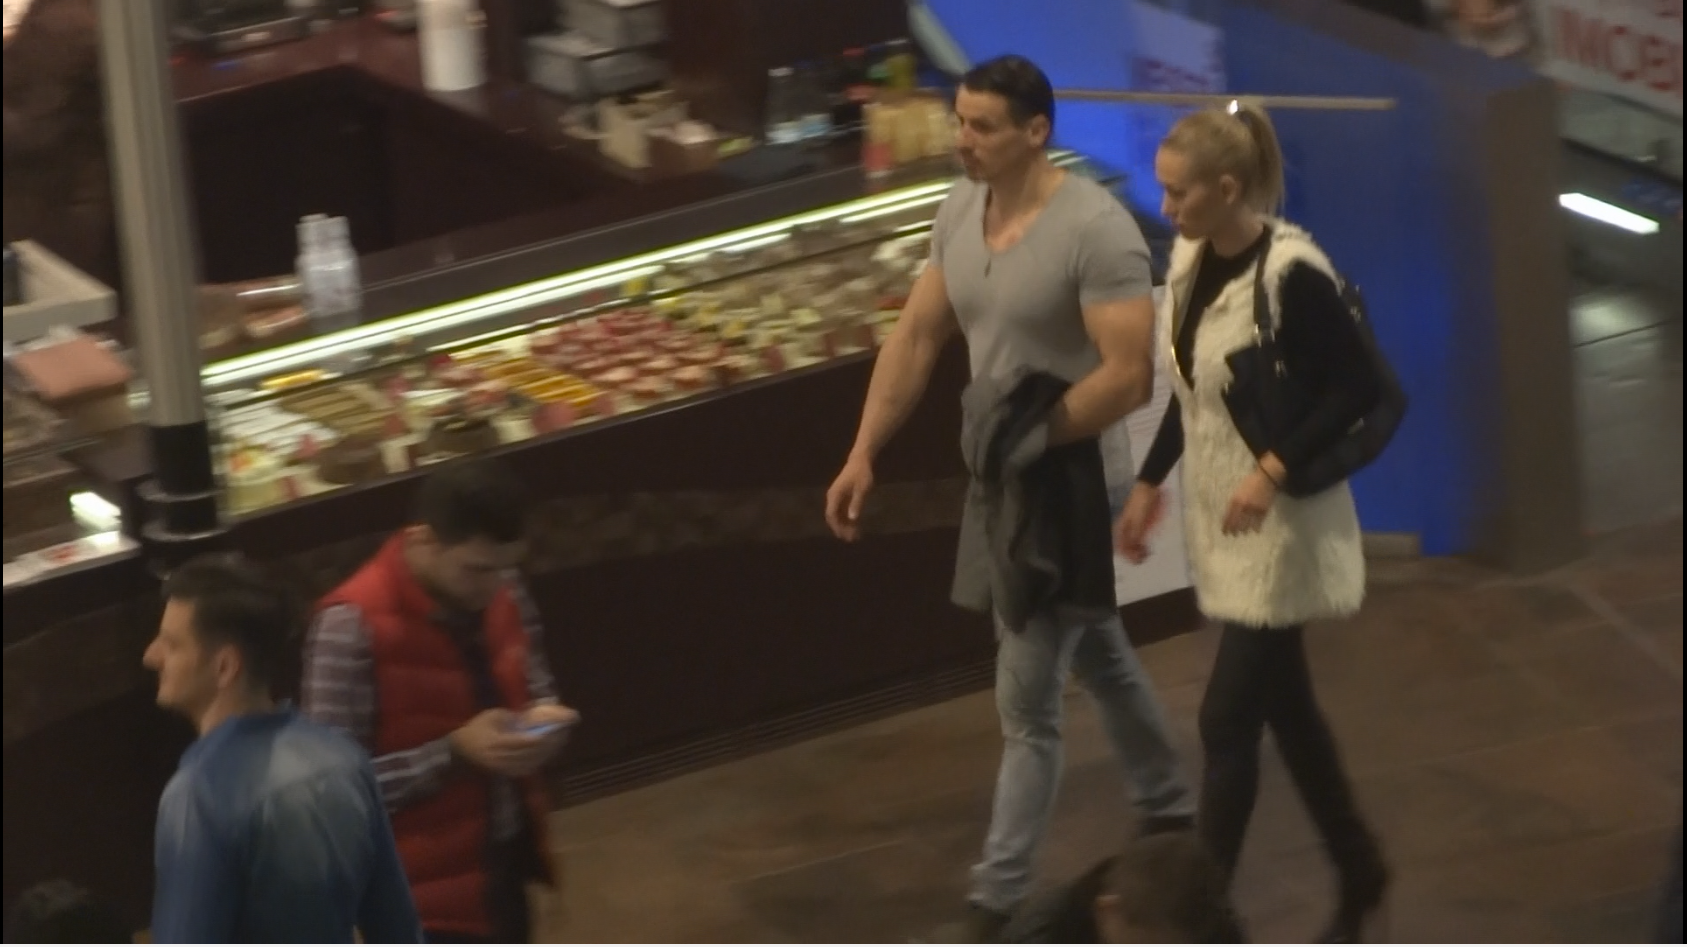 Cei doi s-au plimbat prin centrul comercial